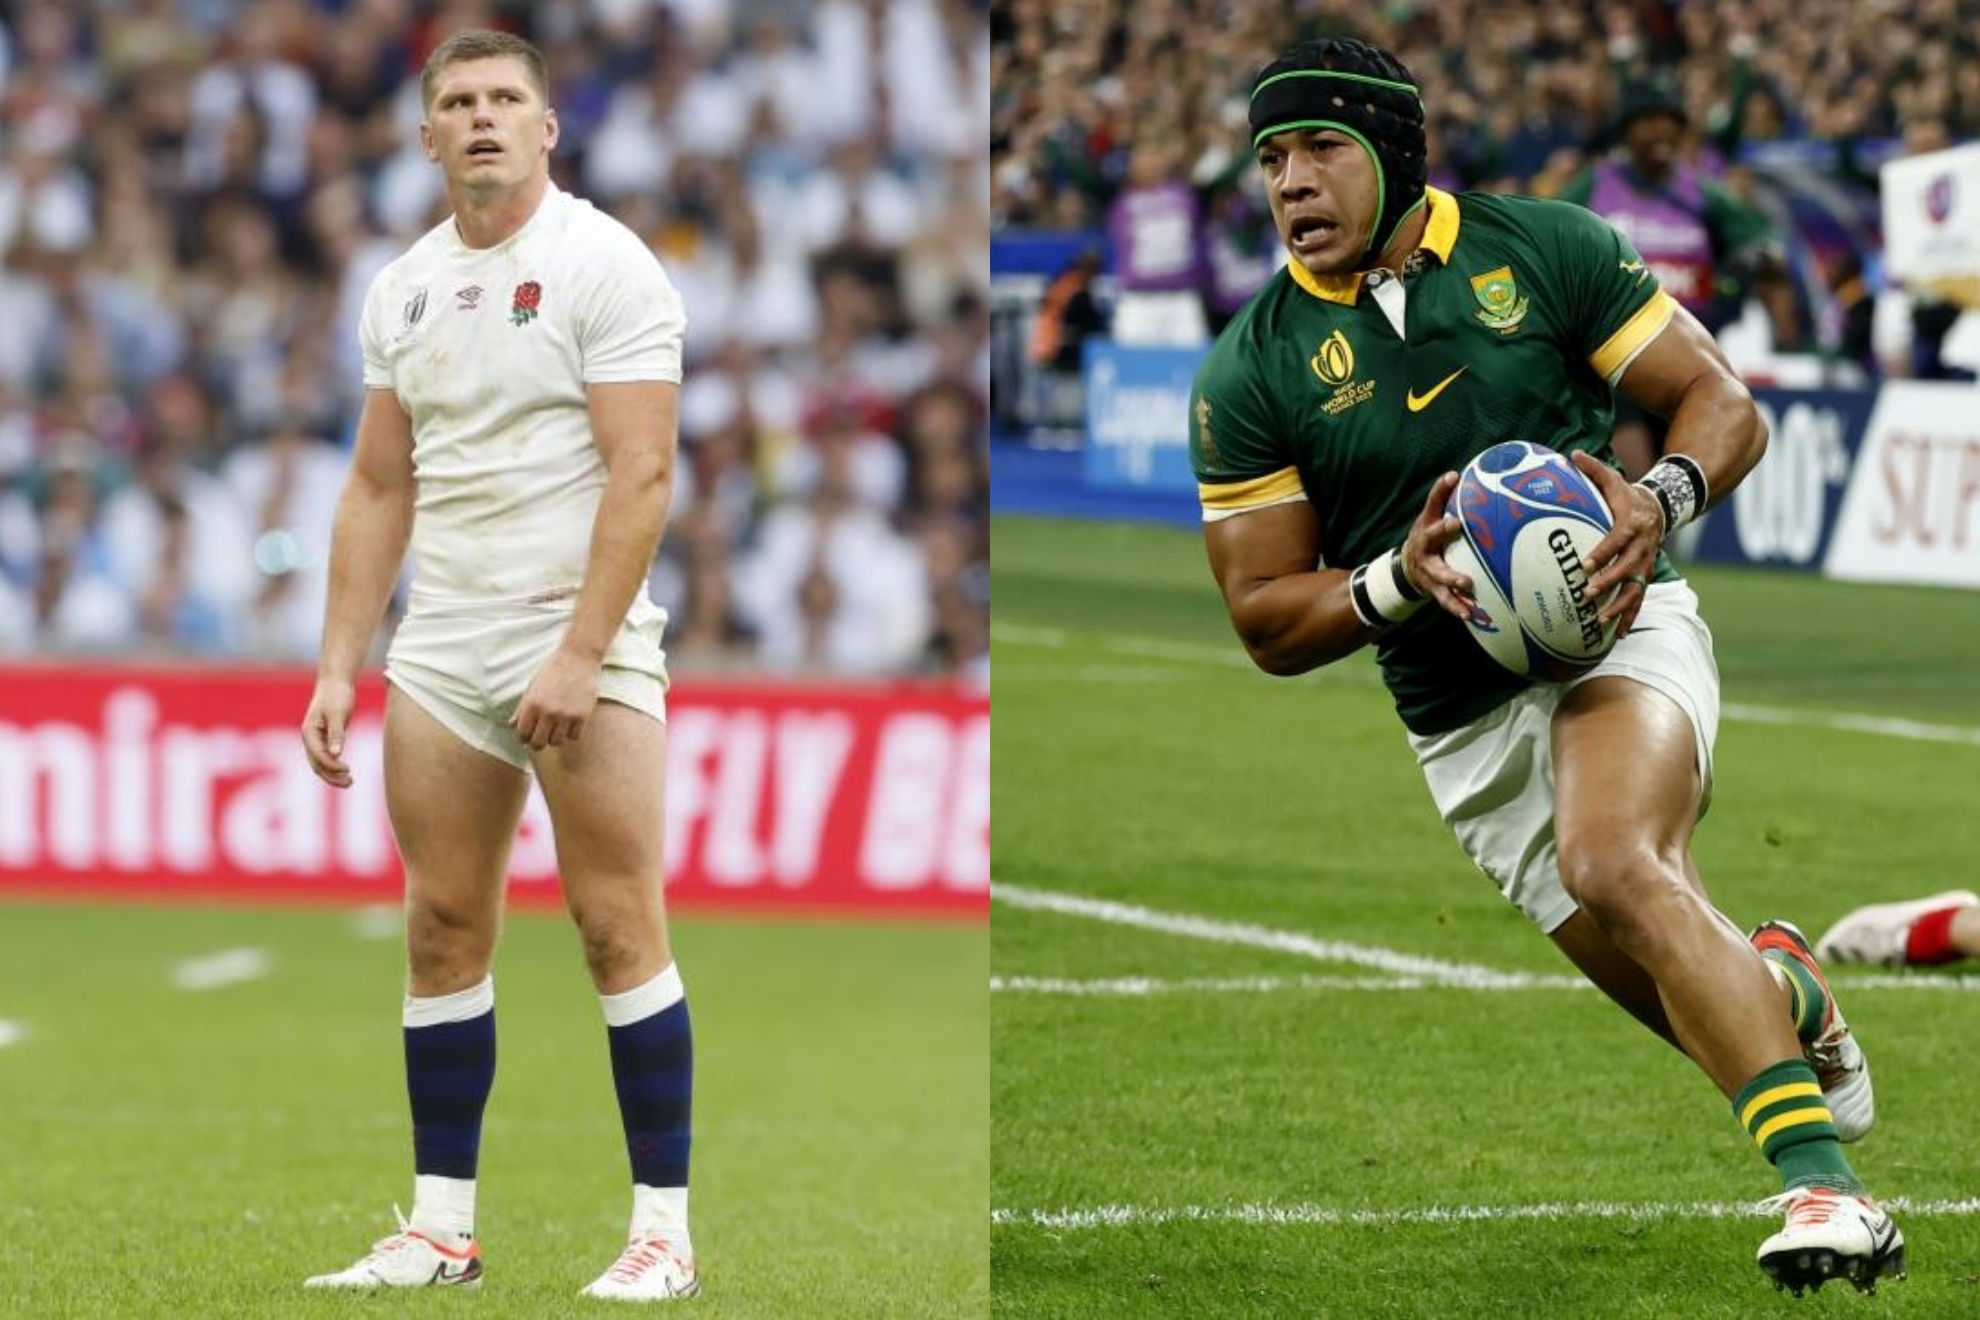 Inglaterra - Sudáfrica | Resumen y resultado de la semifinal del Mundial de rugby